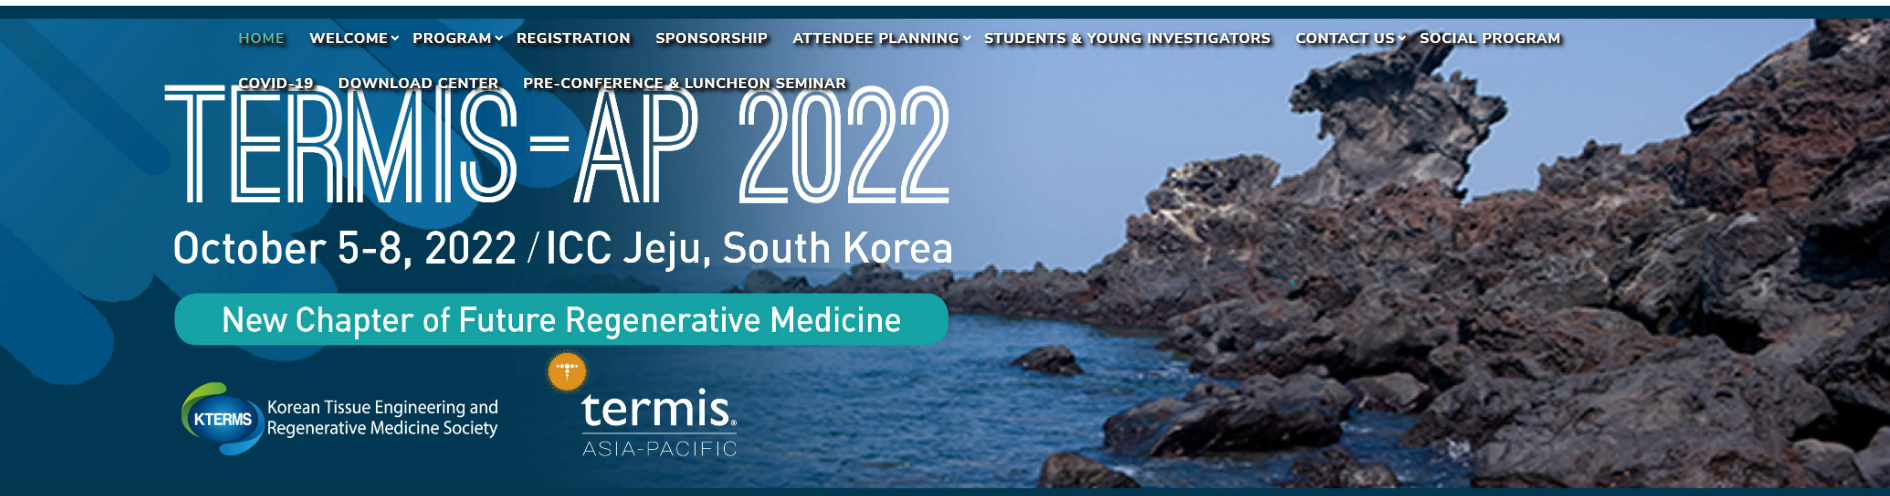 CLZ-2002 Presentation at the TERMIS-AP 2022 by Dr. Jaeseung Lim